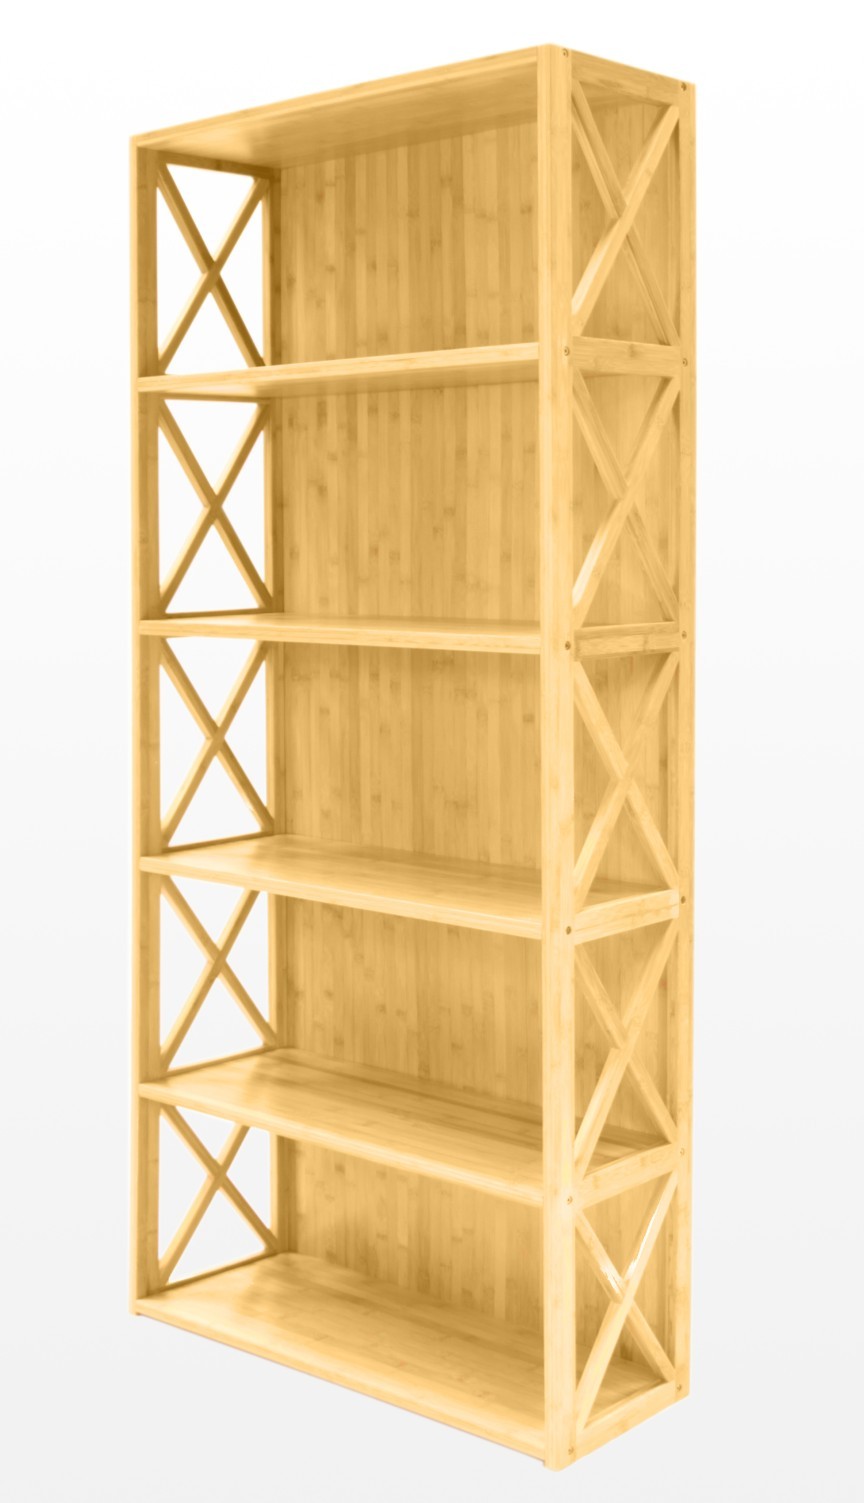 Customizing Your Bamboo Bookcase